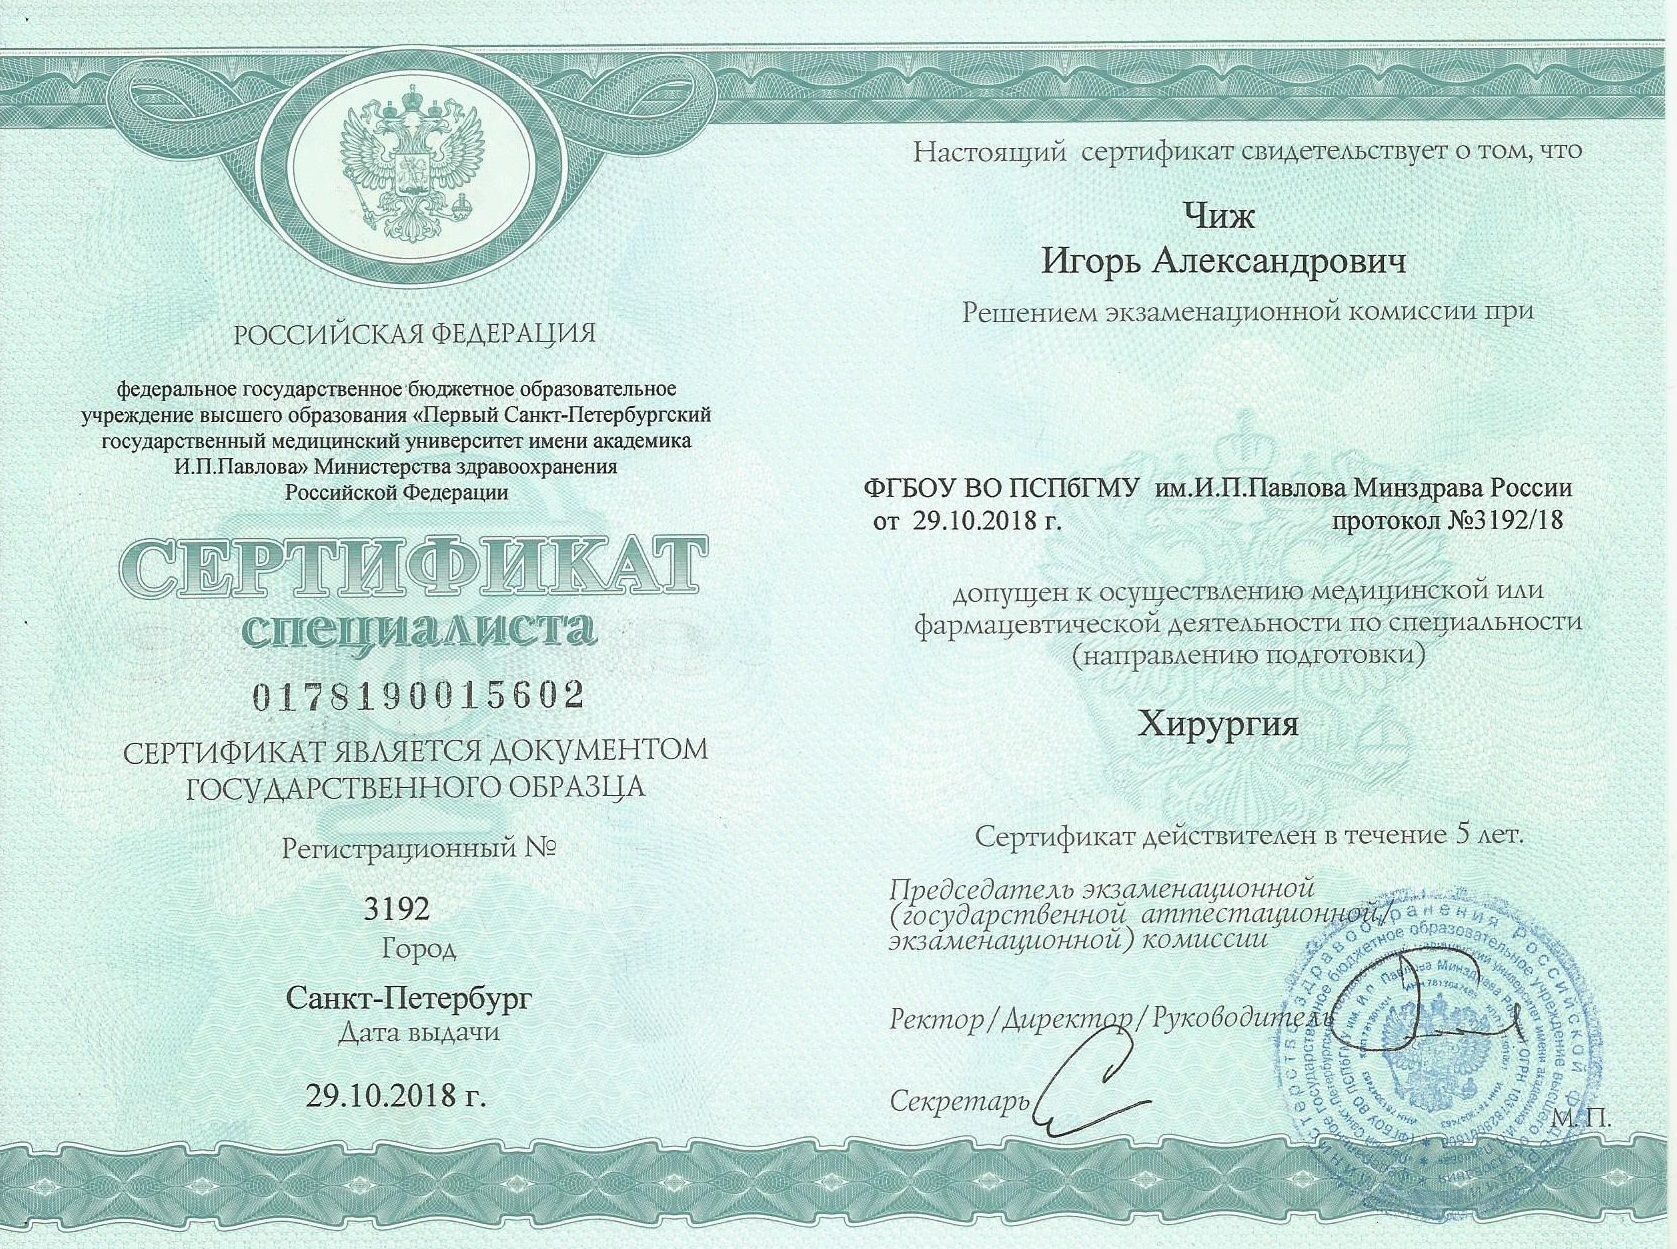 Сертификат хирургия Чиж И.А.